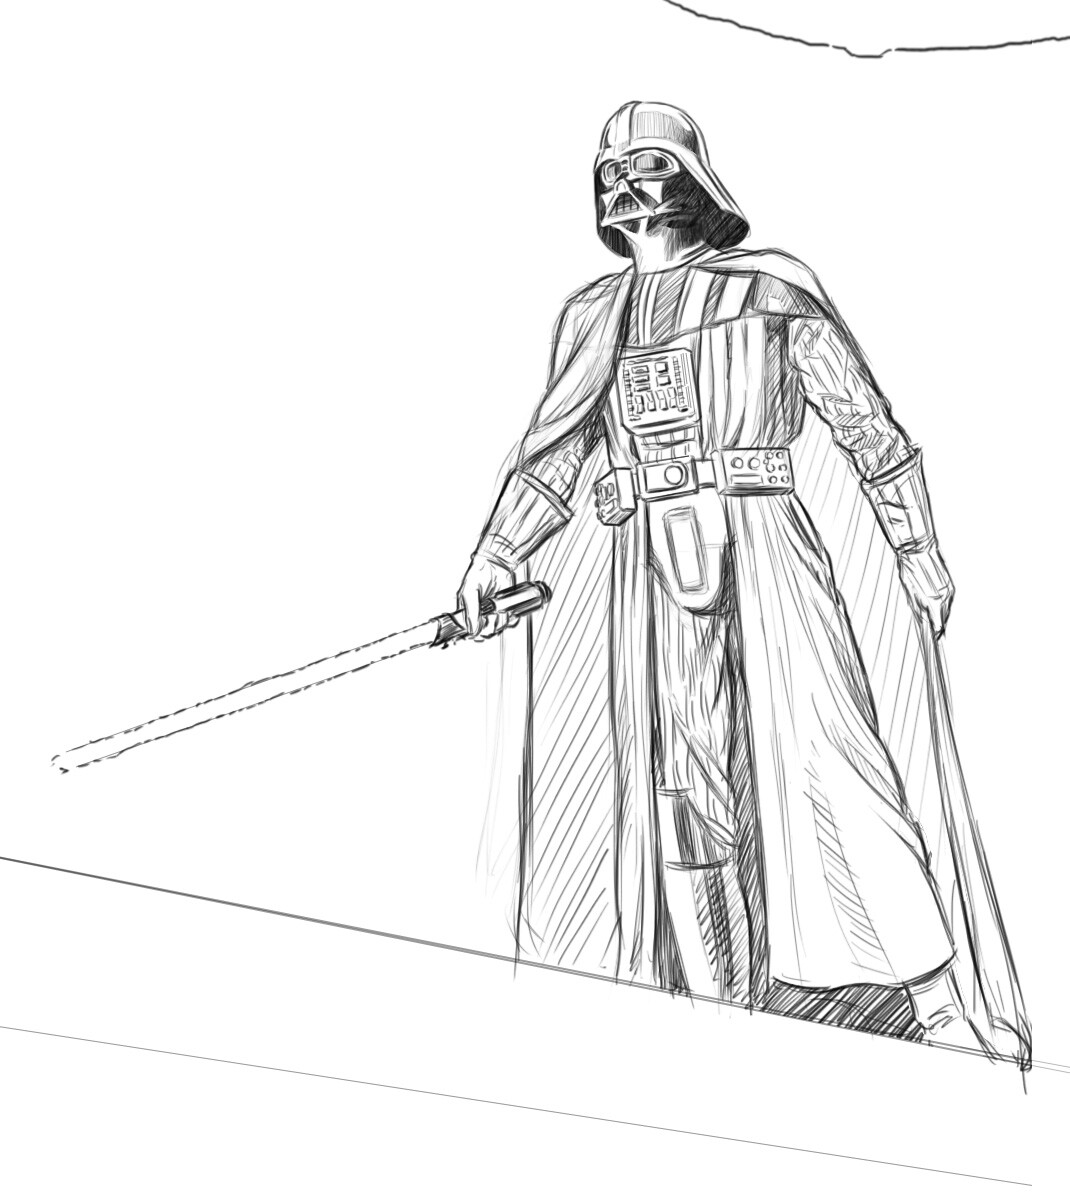 Alientrekwars: Vader Sketch